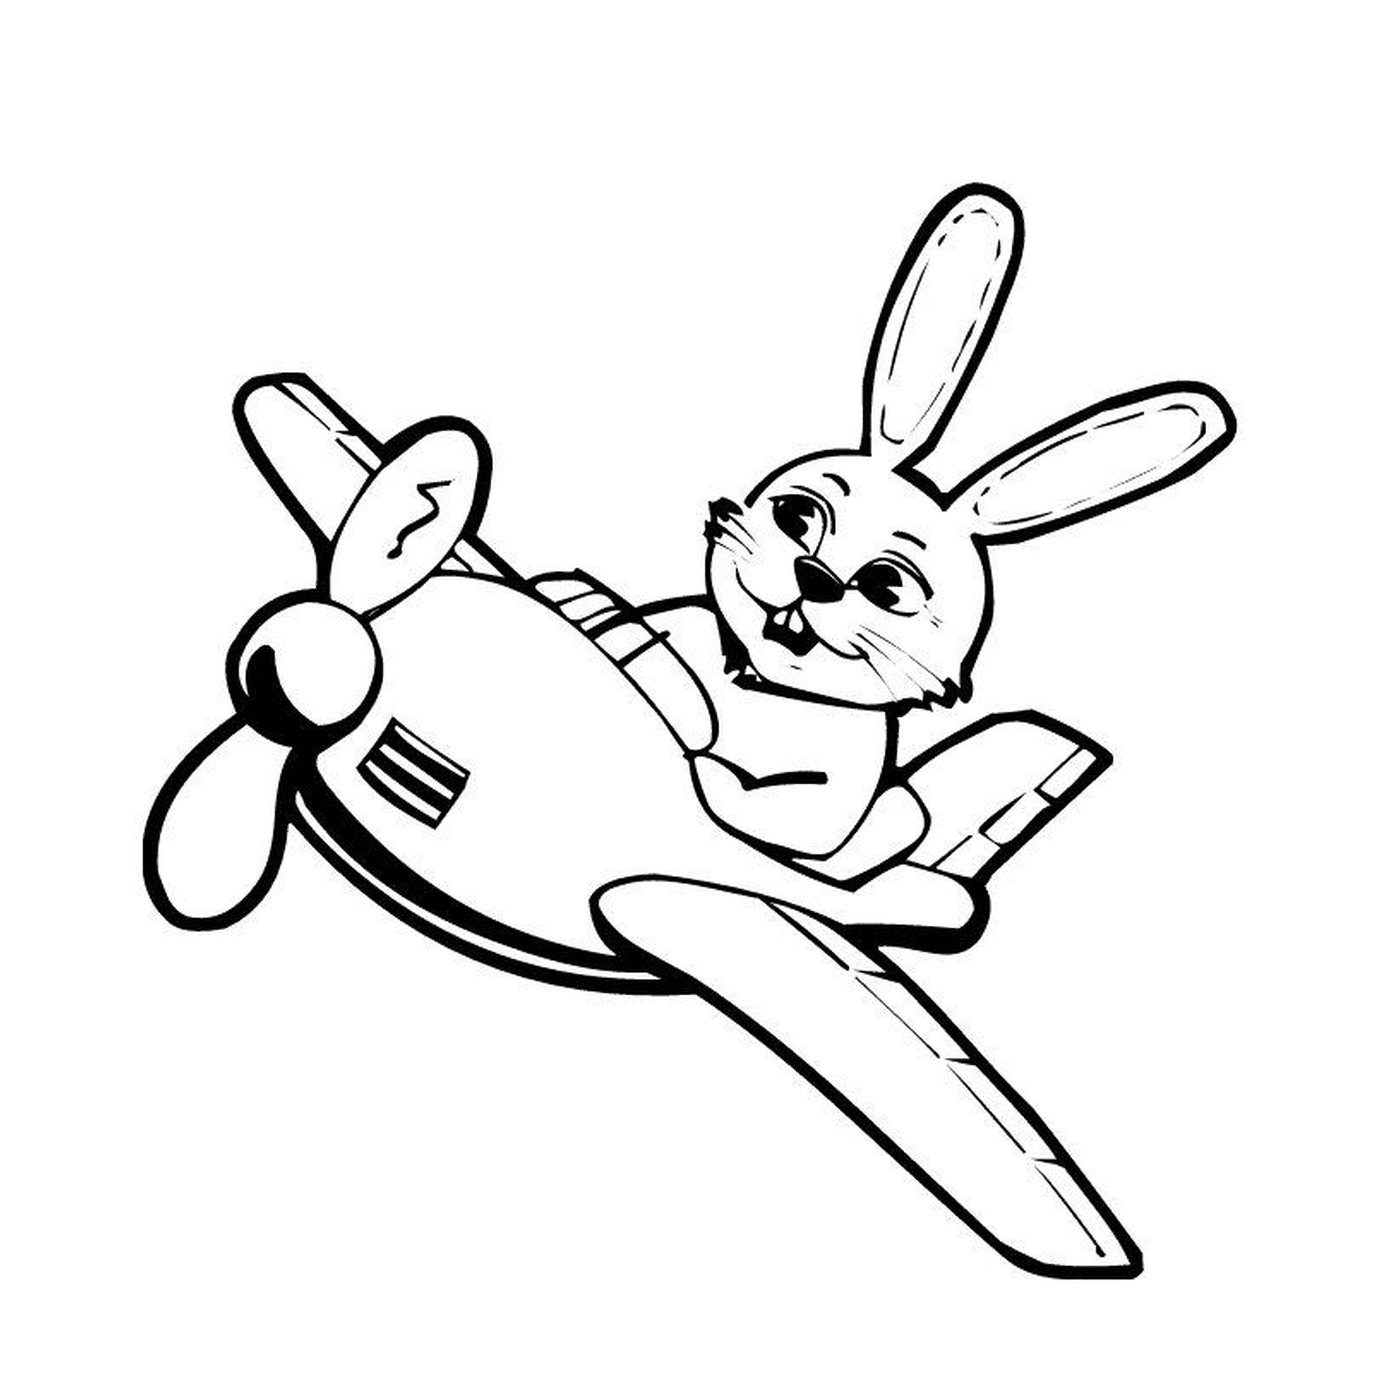  Самолёт с кроликом на нем 